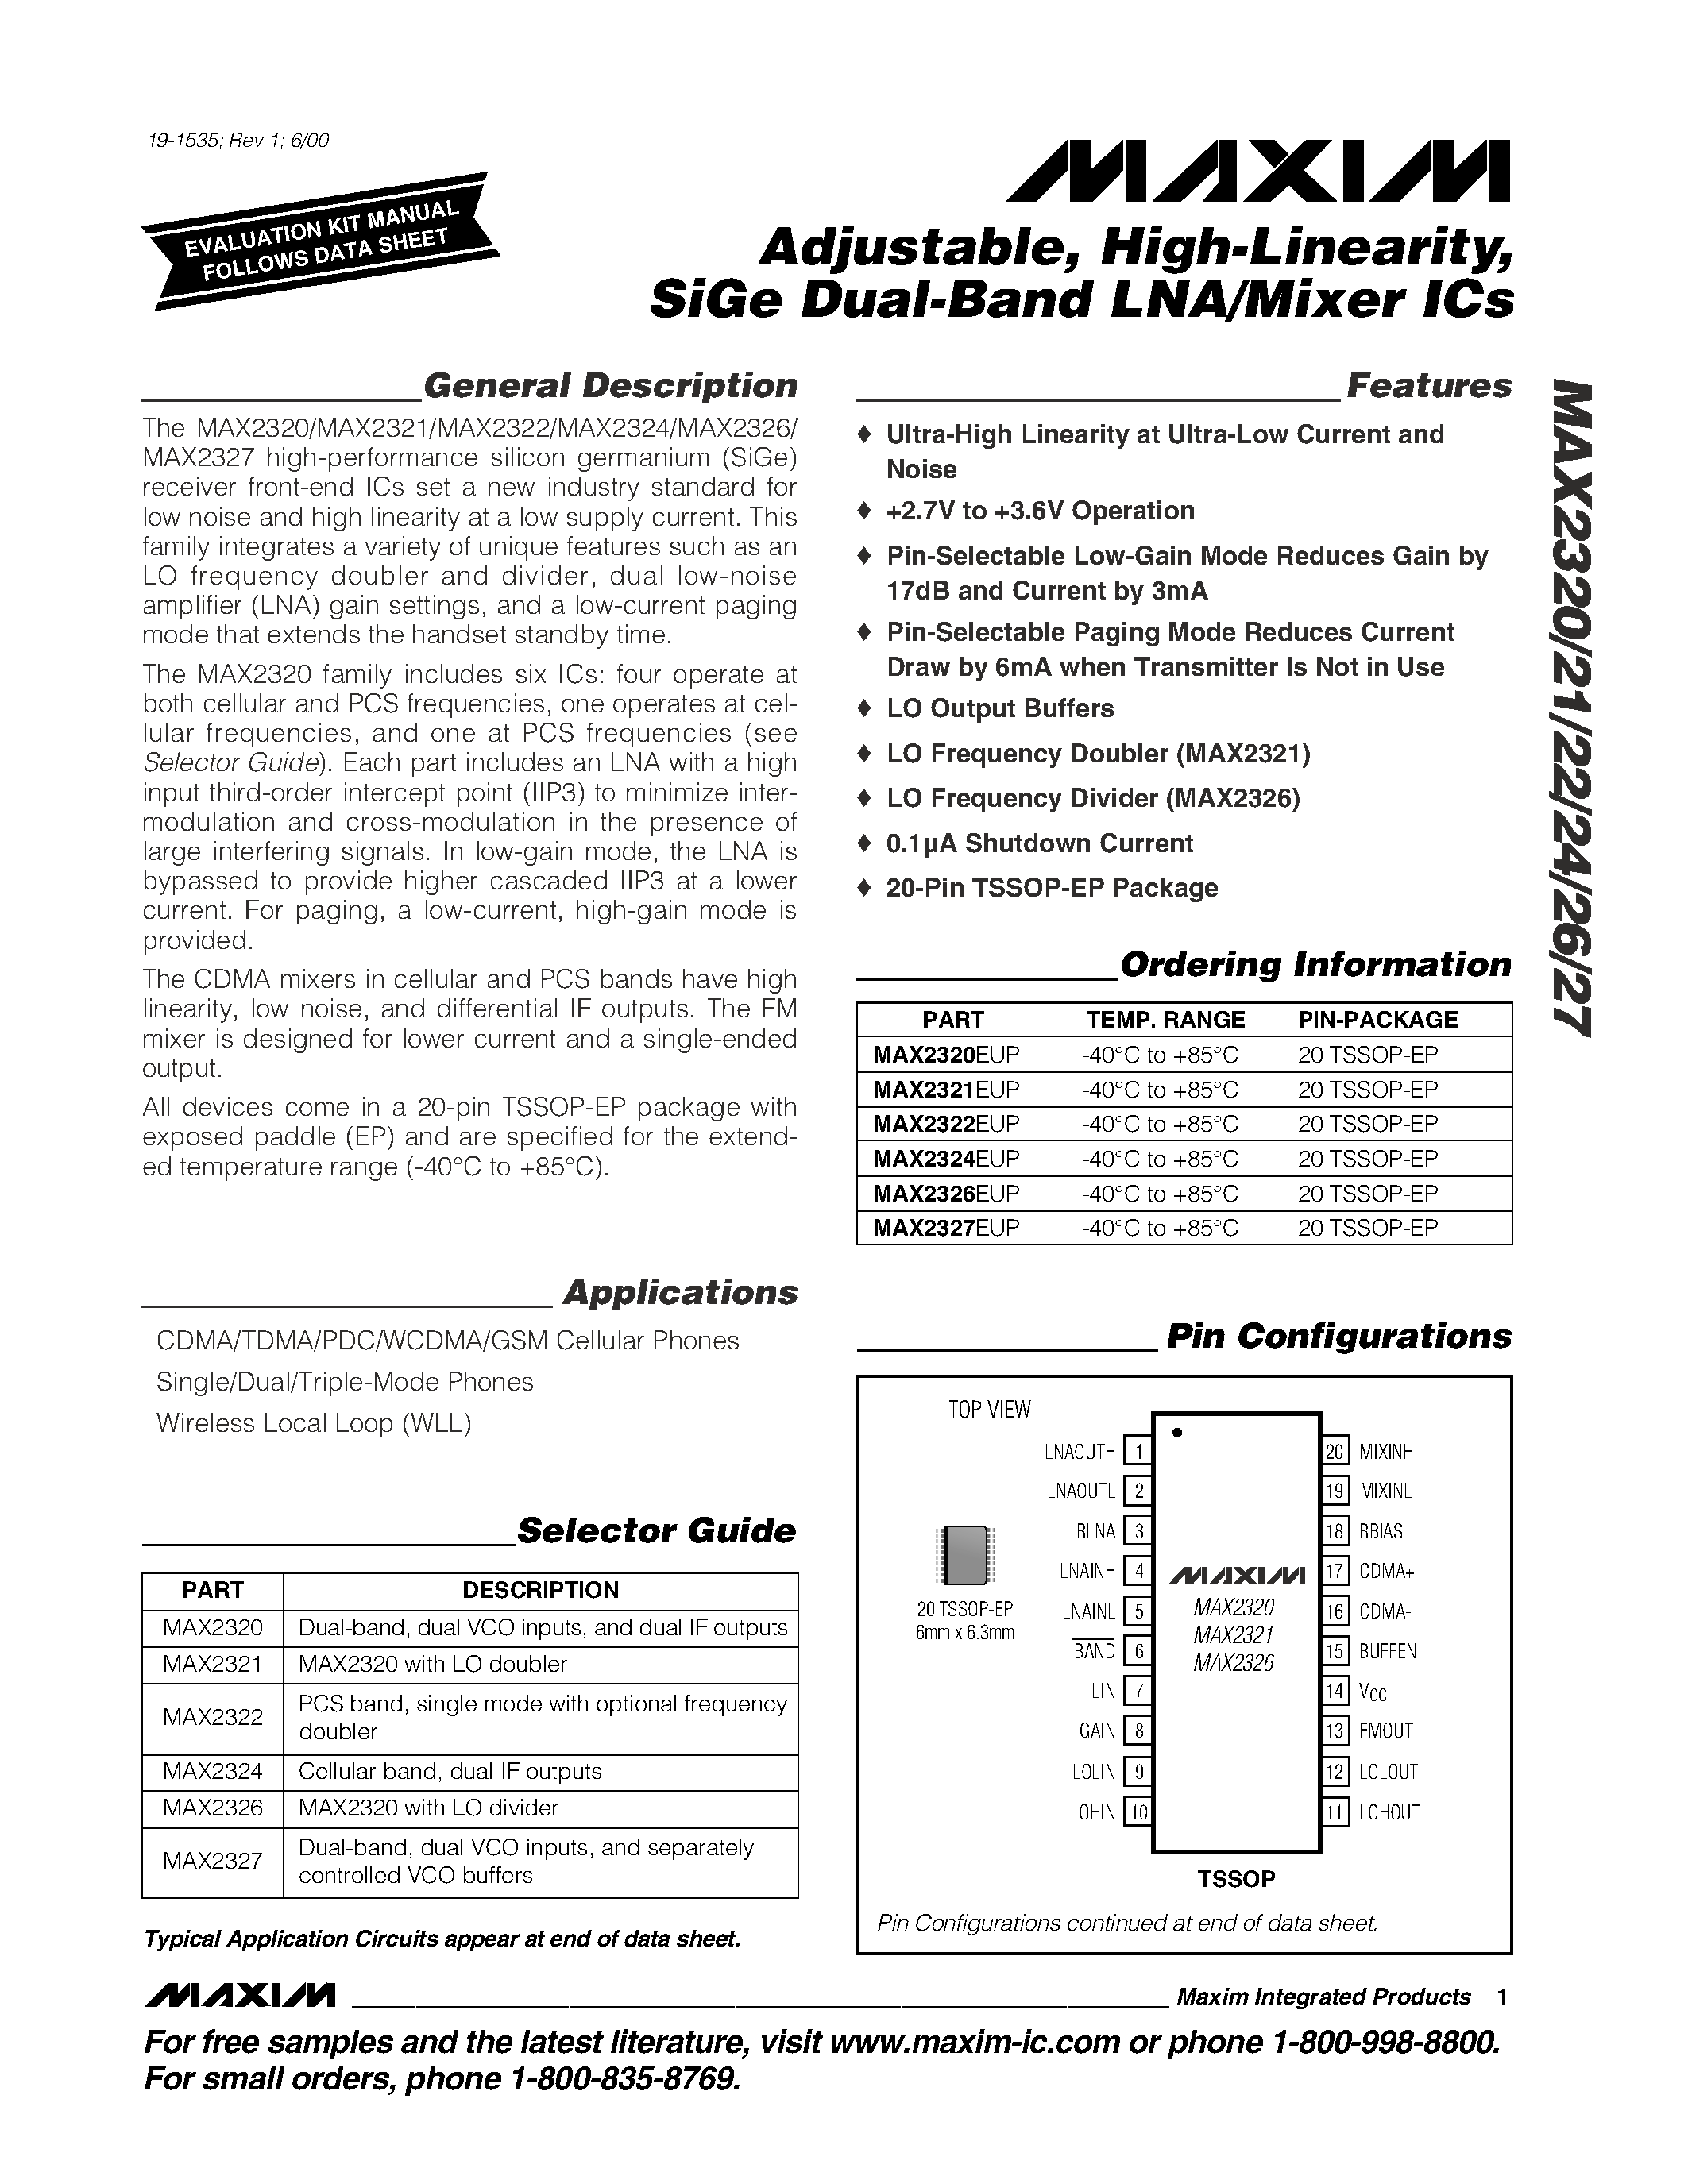 Даташит MAX2321EUP - Adjustable / High-Linearity / SiGe Dual-Band LNA/Mixer ICs страница 1